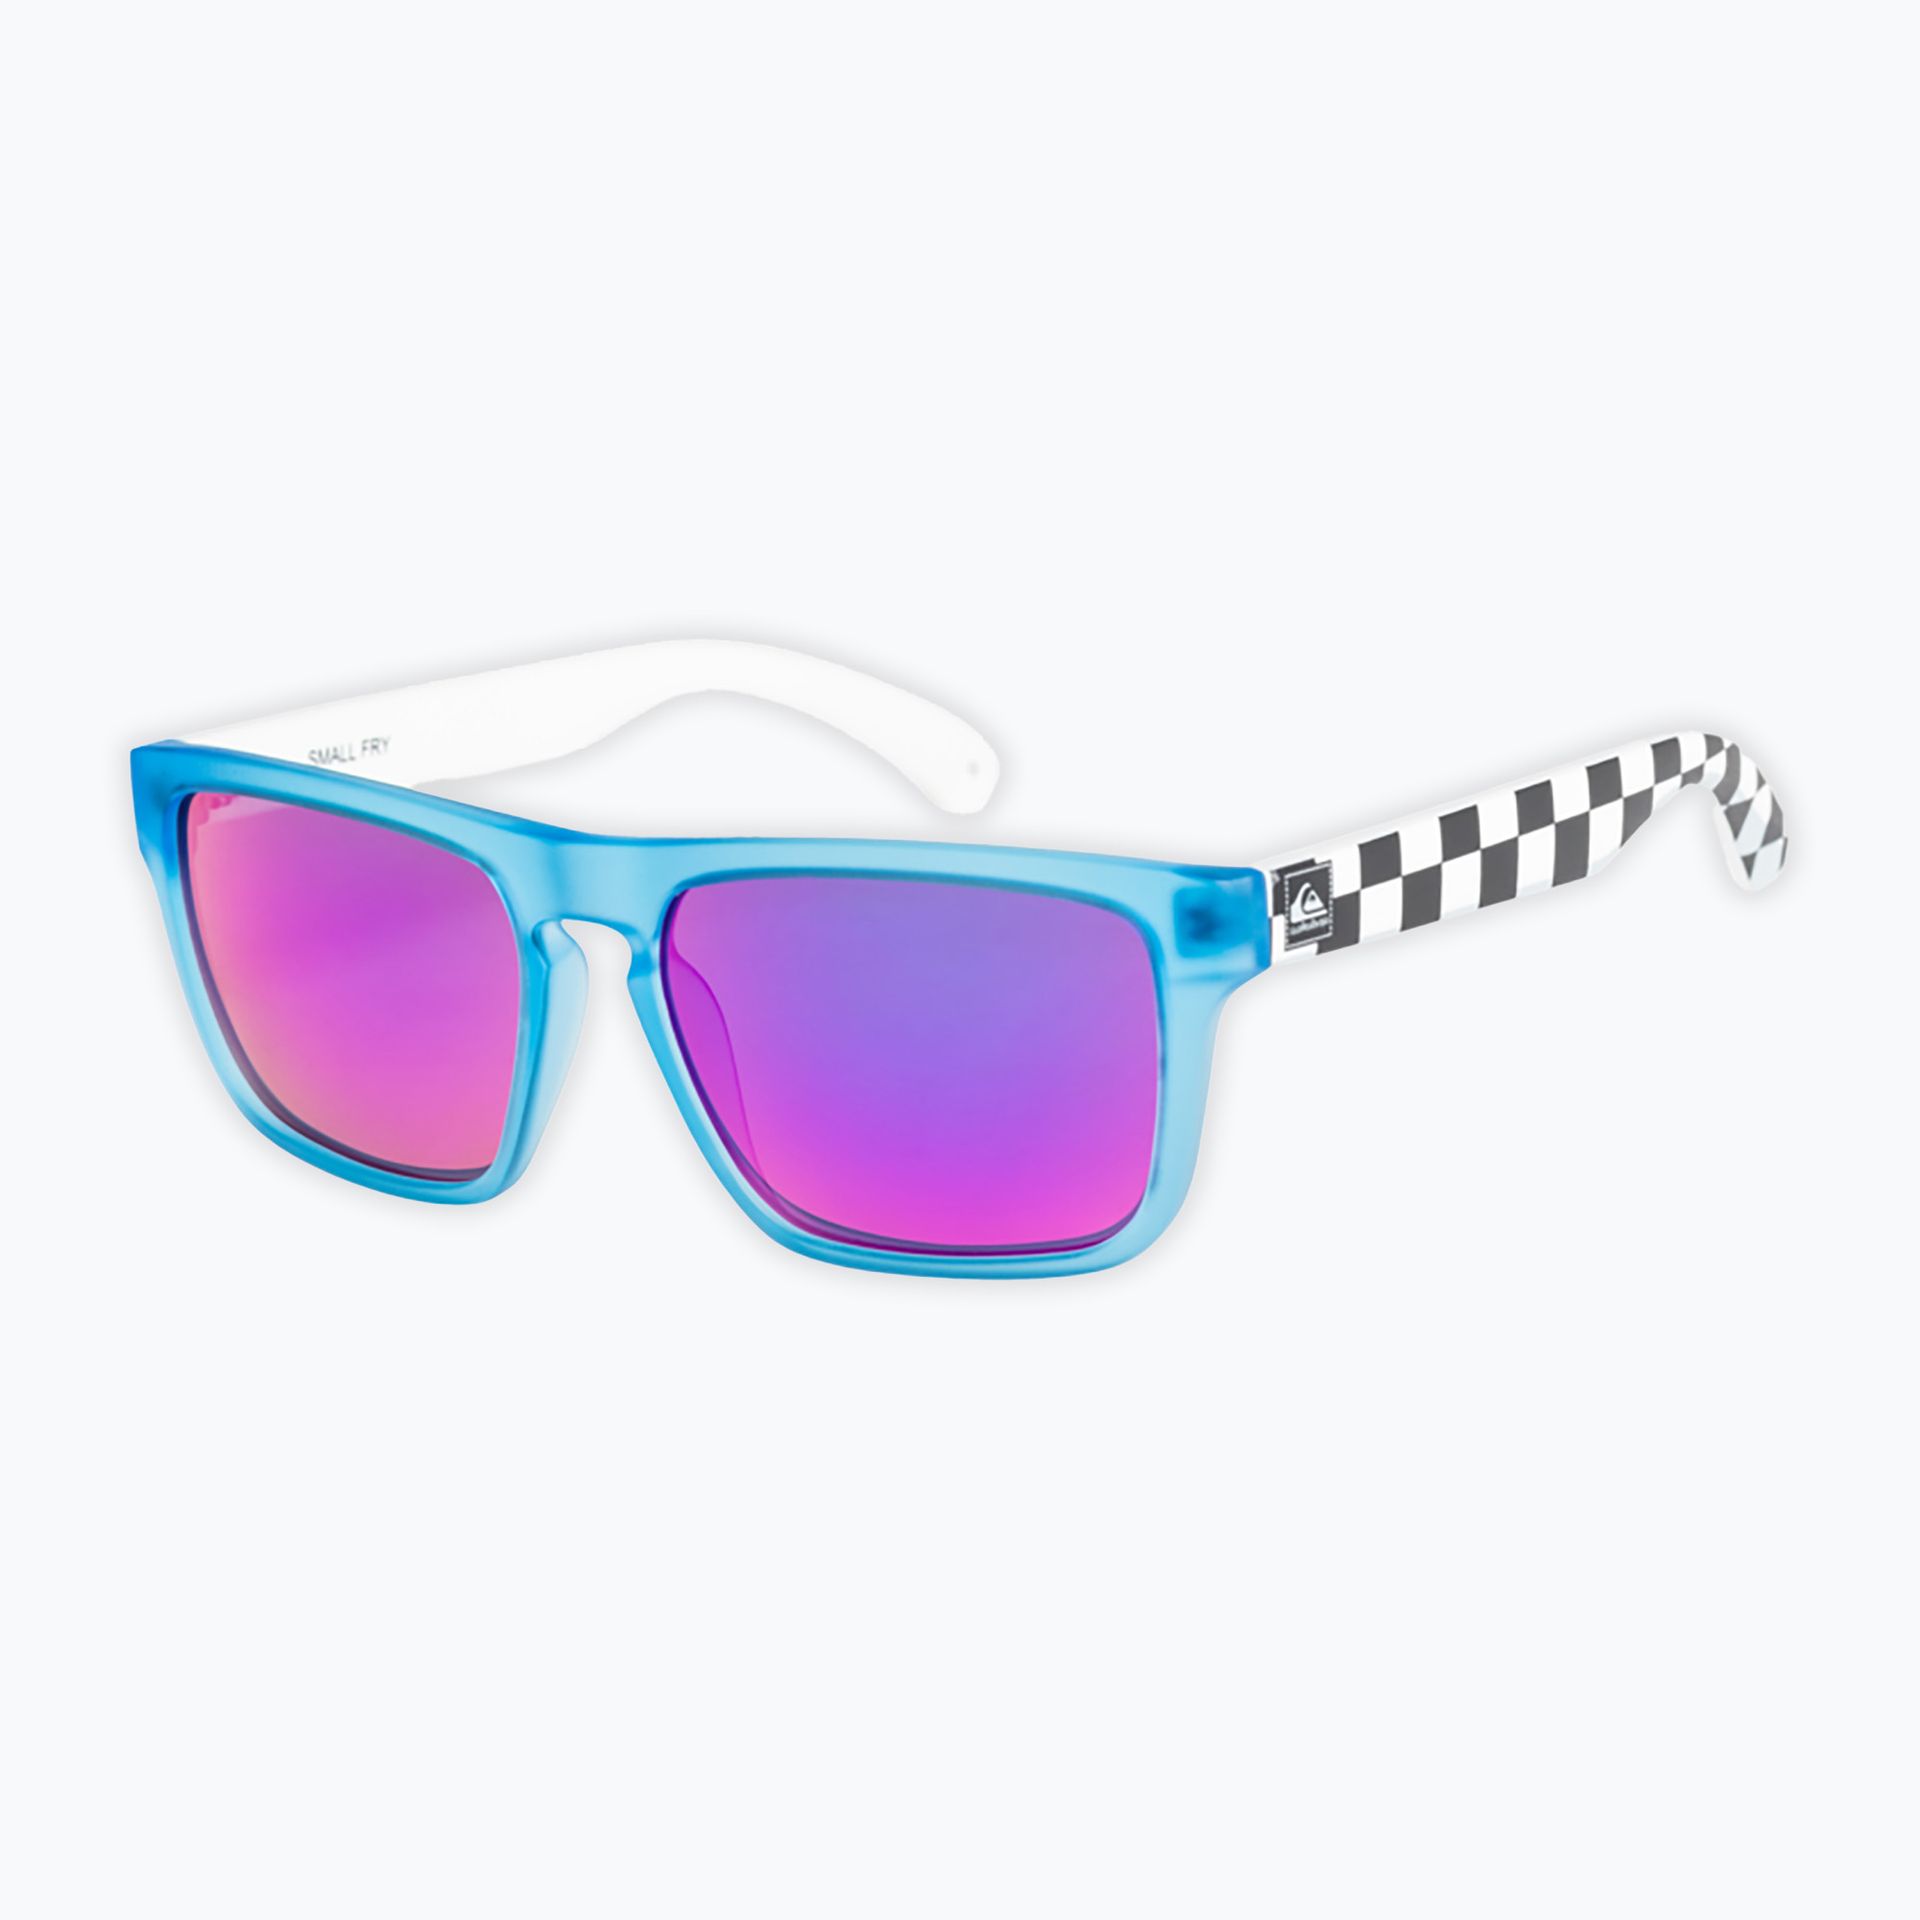 Okulary przeciwsłoneczne dziecięce Quiksilver Small Fry blue/ml purple | WYSYŁKA W 24H | 30 DNI NA ZWROT